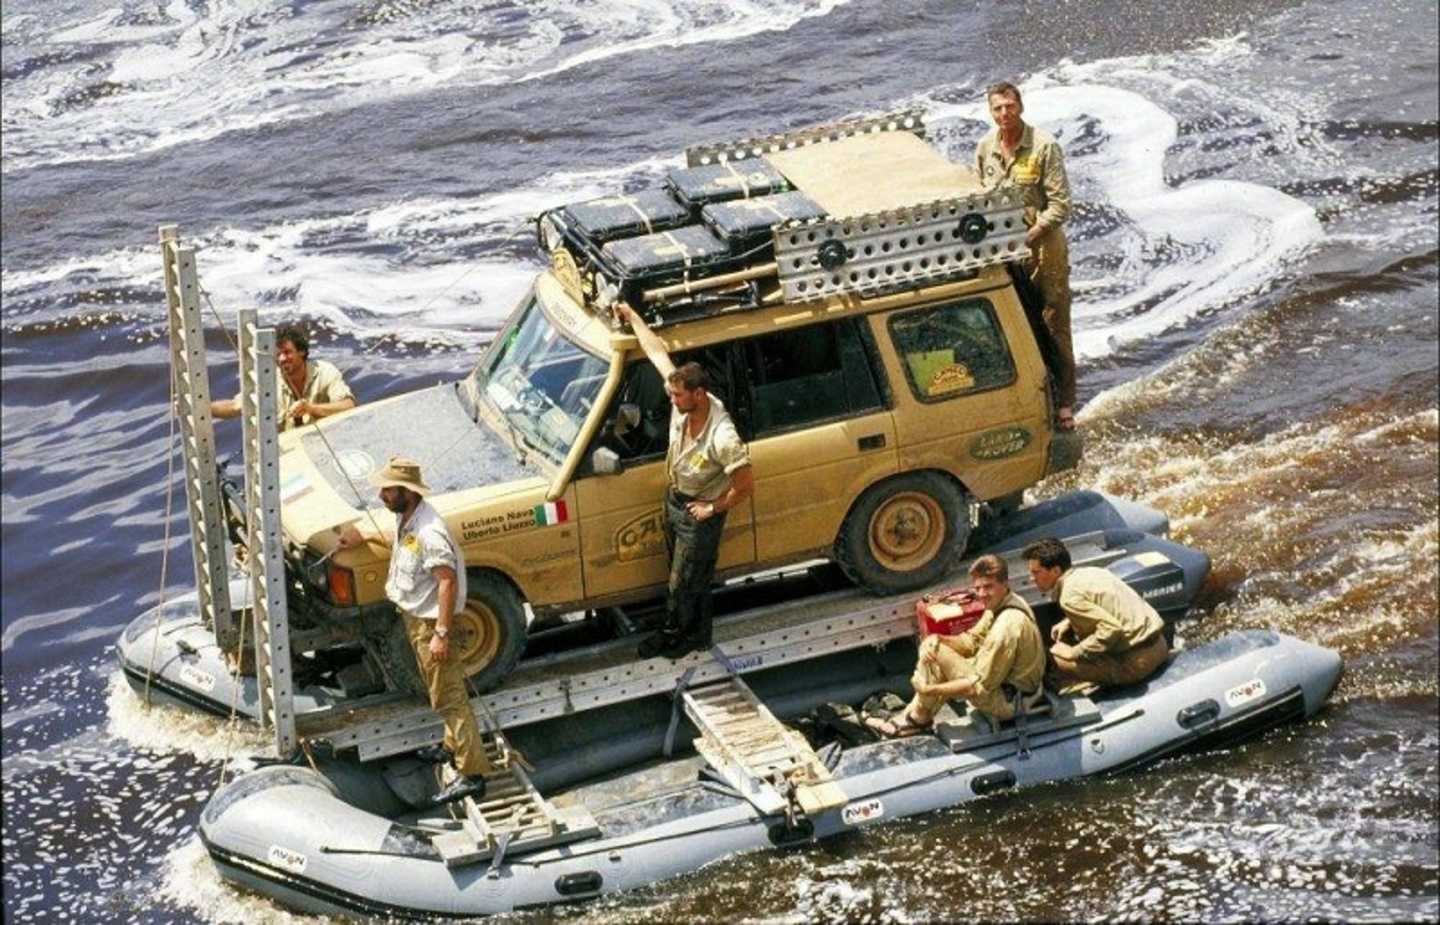 Range Rover sur un pneumatique pour traverser un fleuve